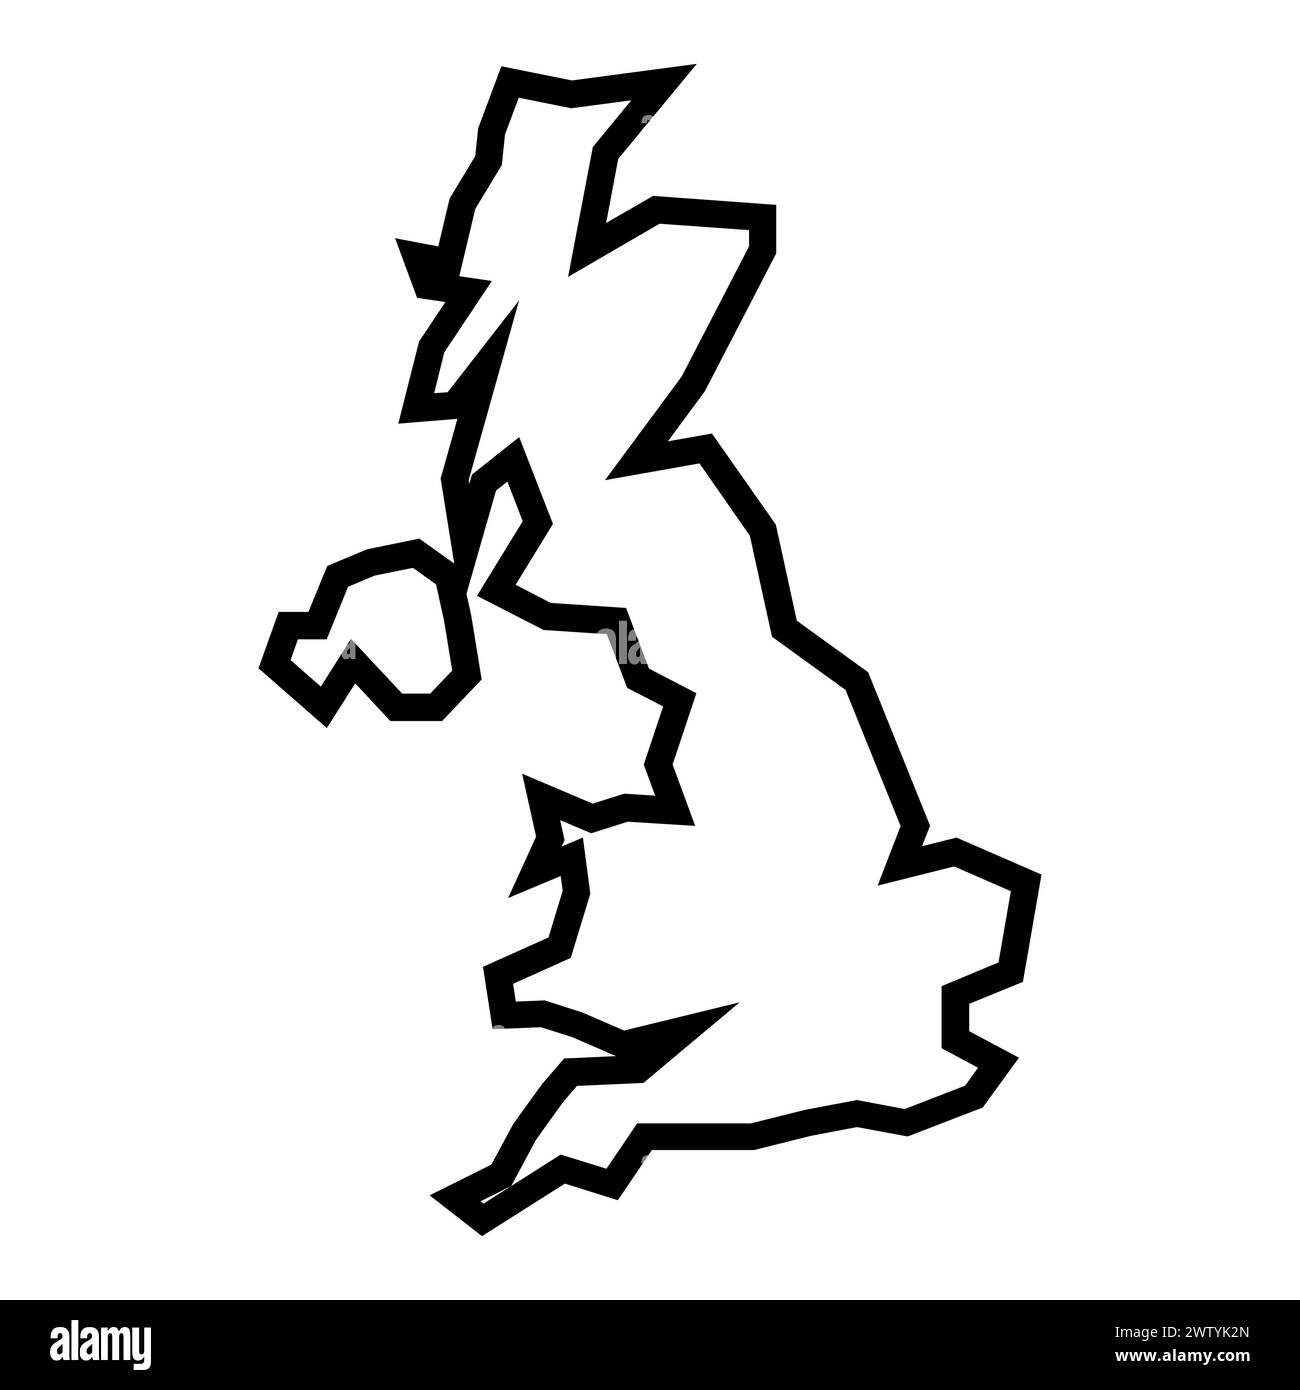 Schwarze Vektor-UK-Umrisskarte auf weißem Hintergrund Stock Vektor